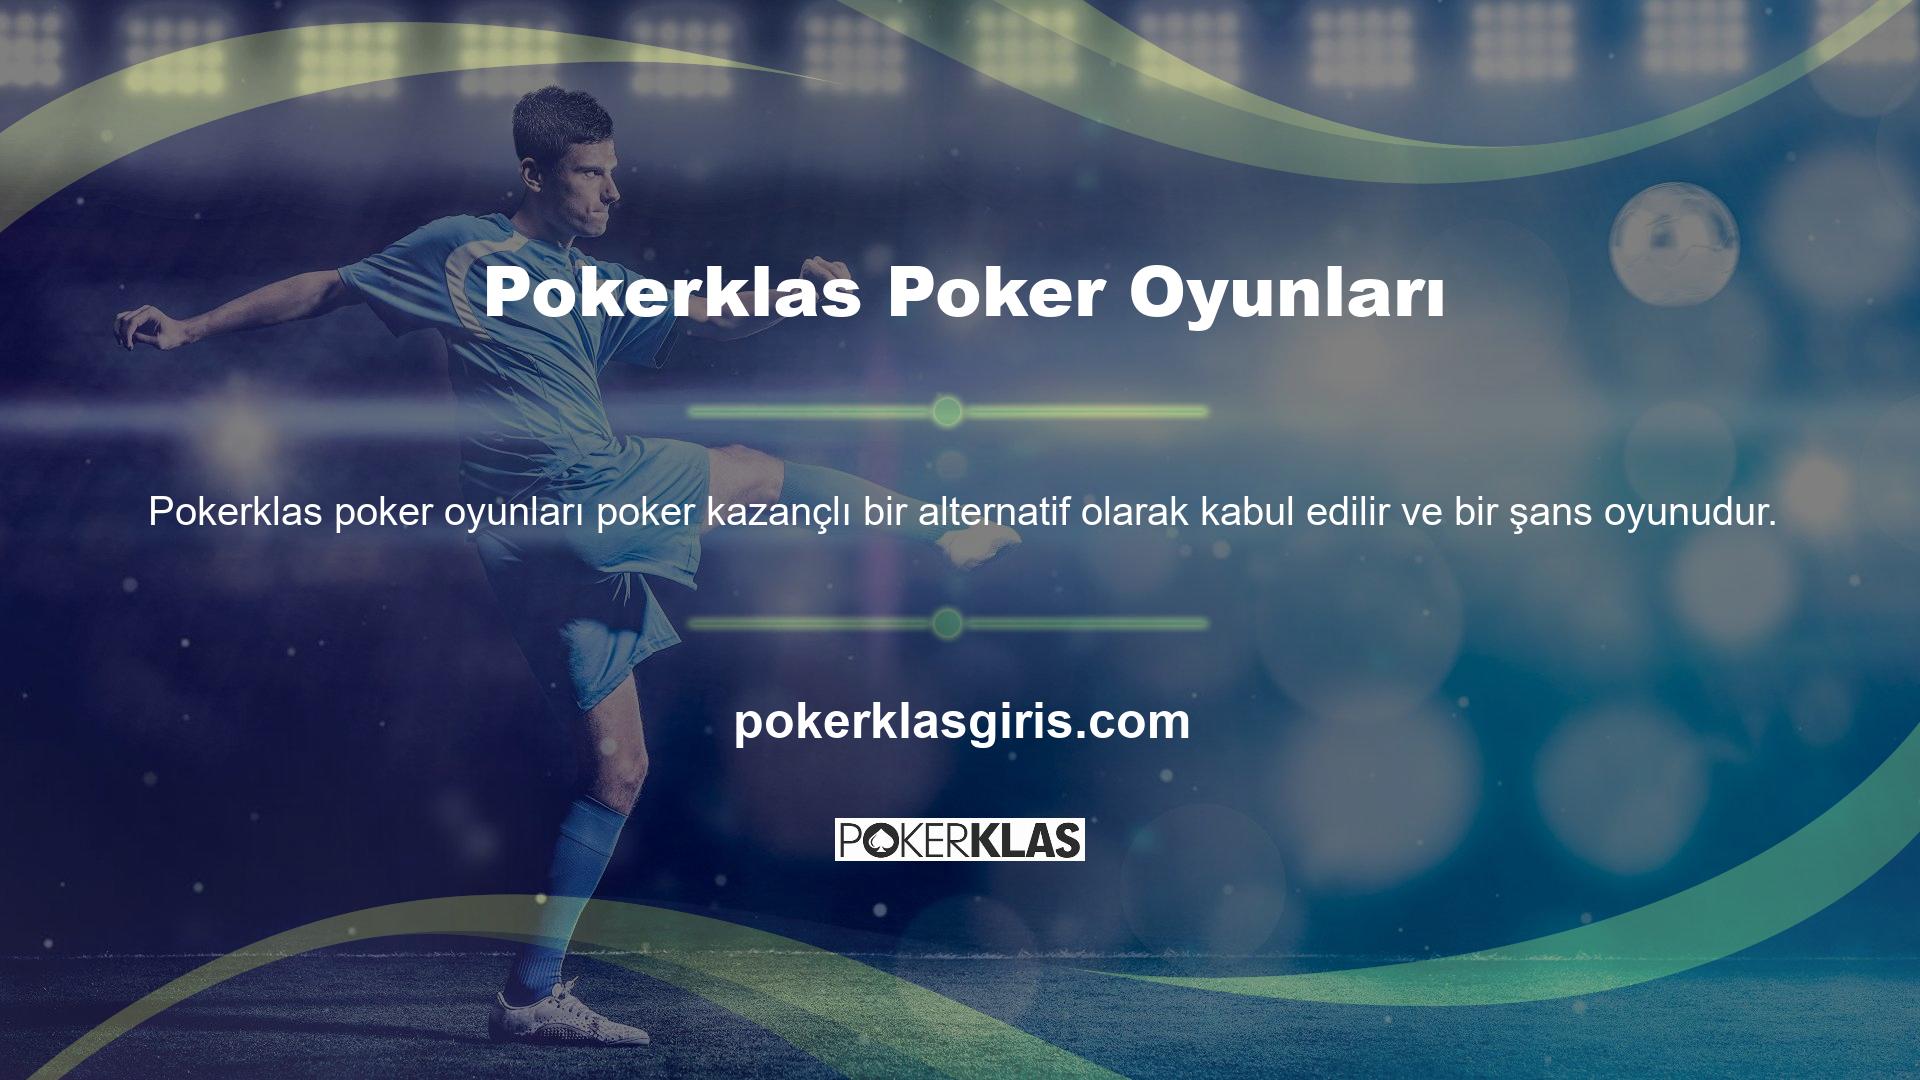 Bu bağlamda Pokerklas Games bahis sitesinde bahisçilerin makul miktarda para kazanmaları için poker oyunlarına erişim sunulmaktadır